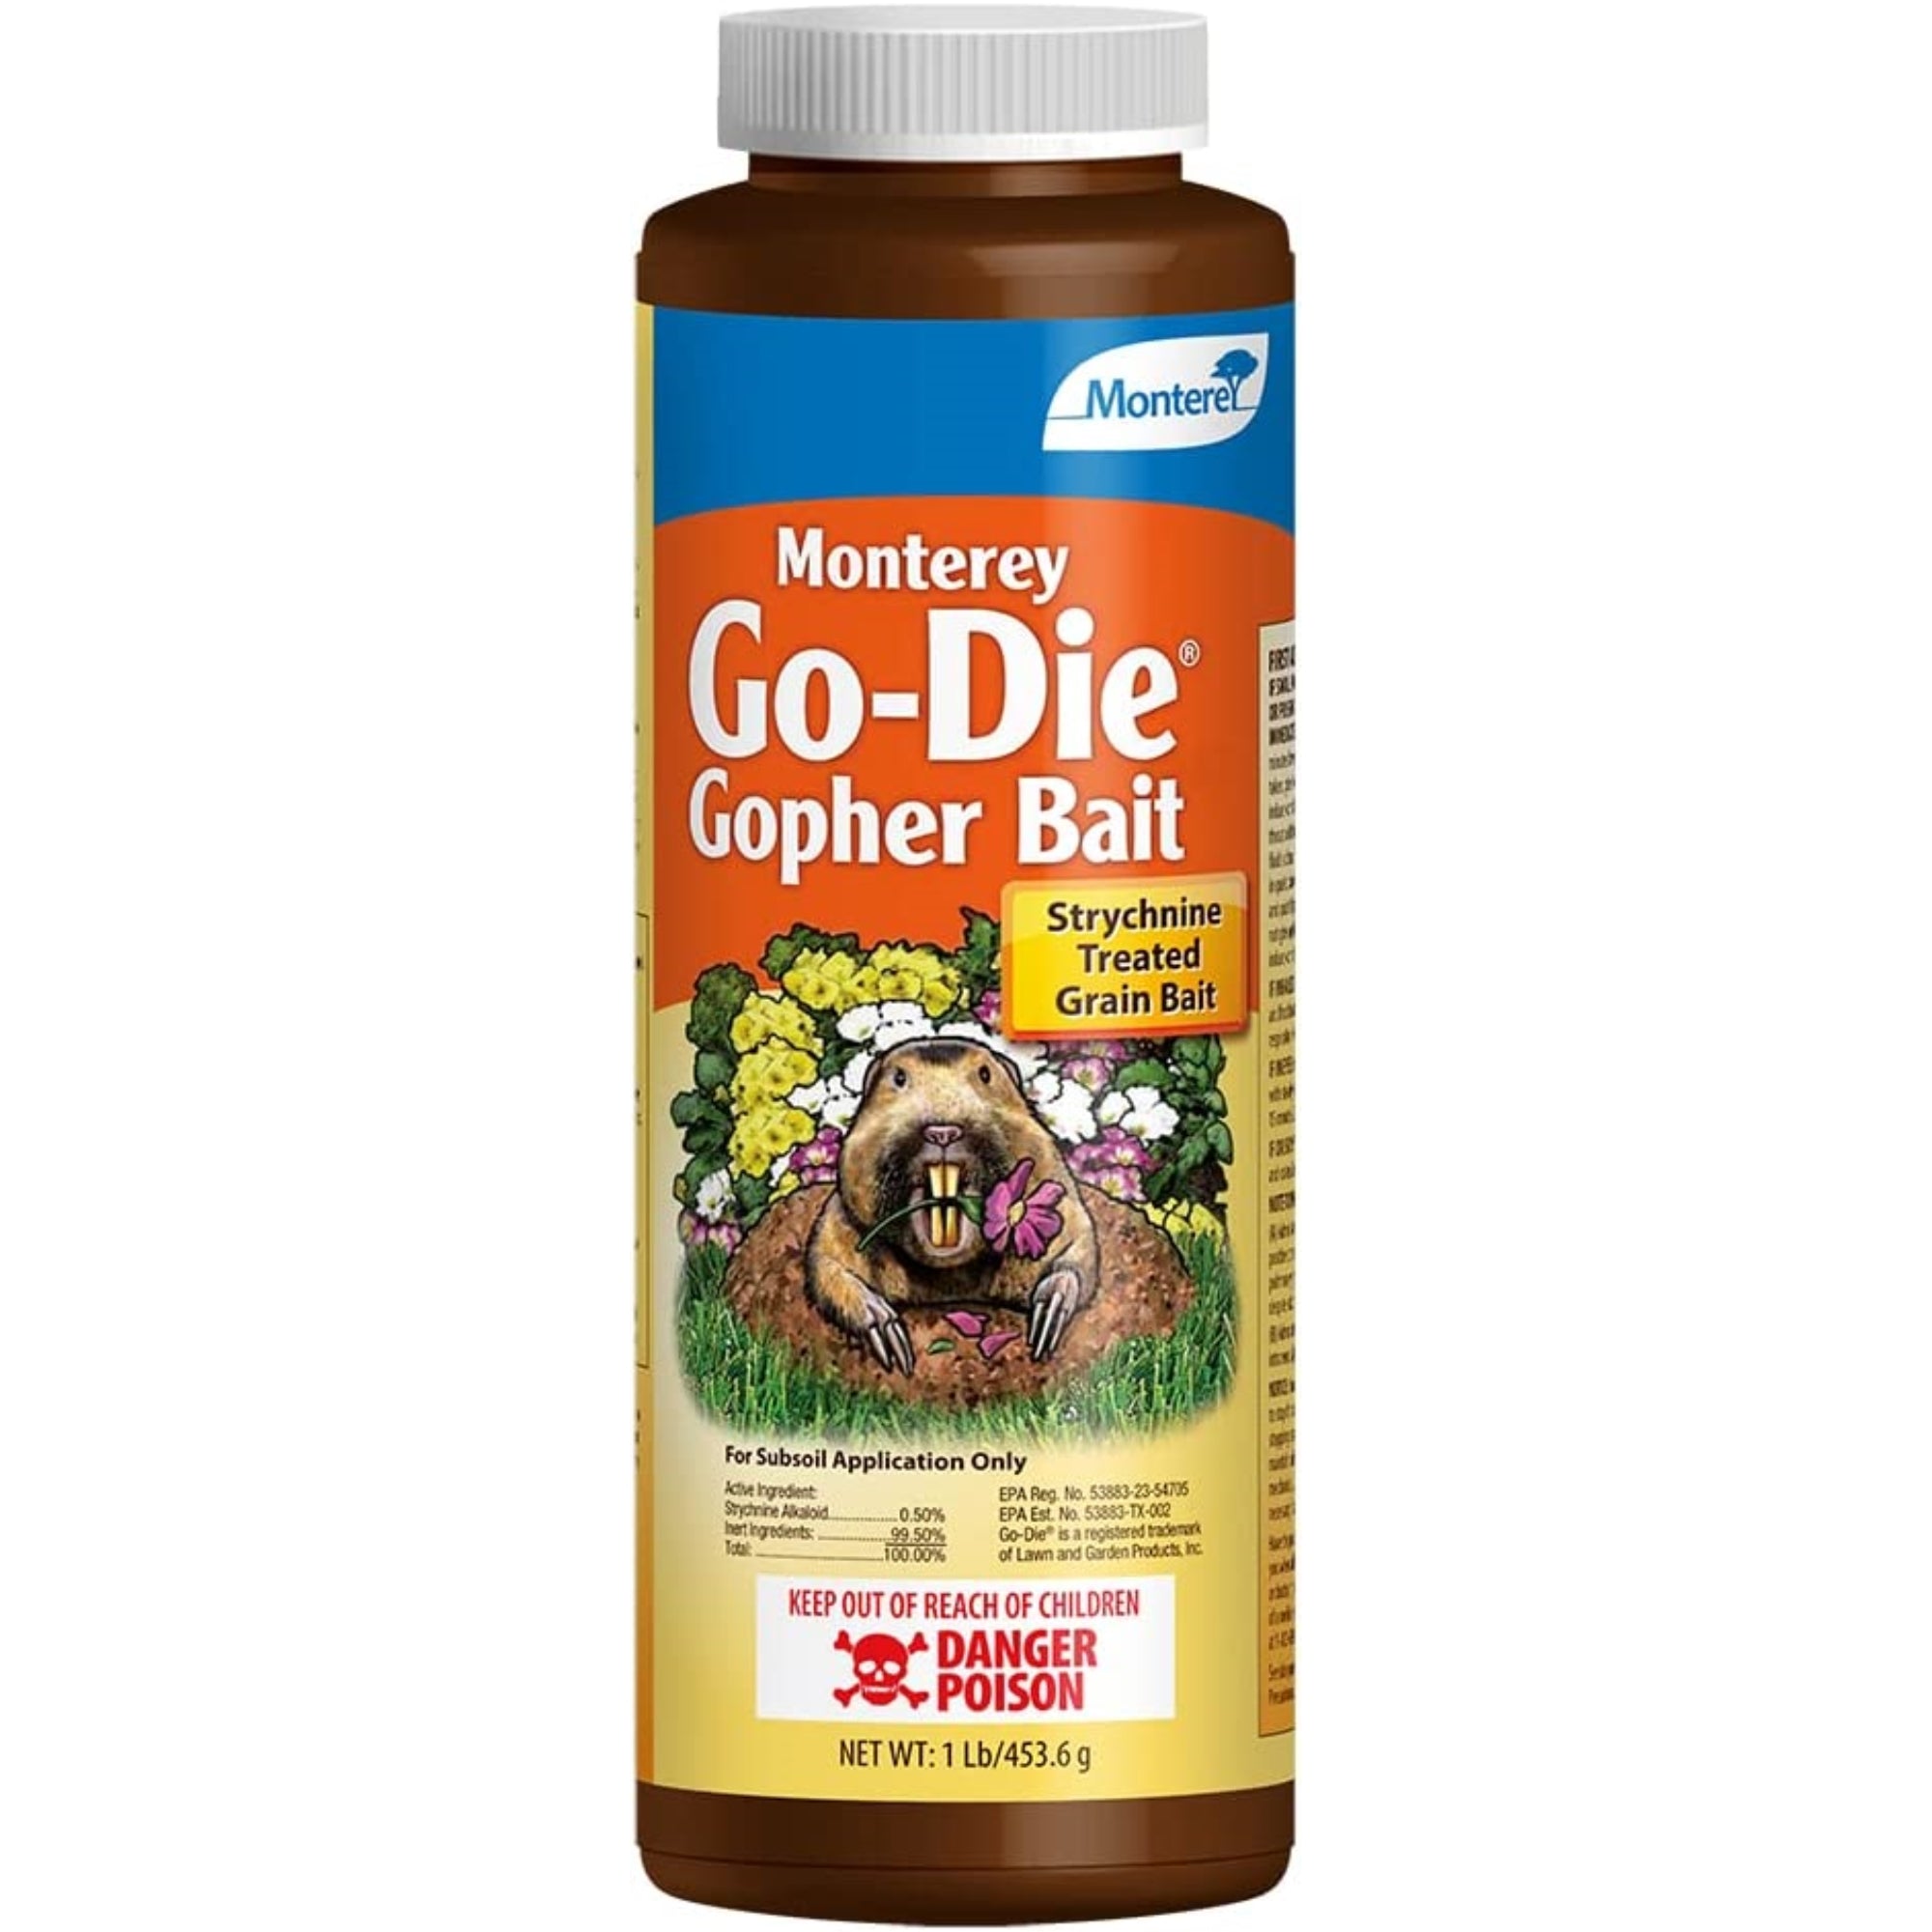 Monterey Go-DIE Gopher Animal Bait Pesticide, 1 Pound